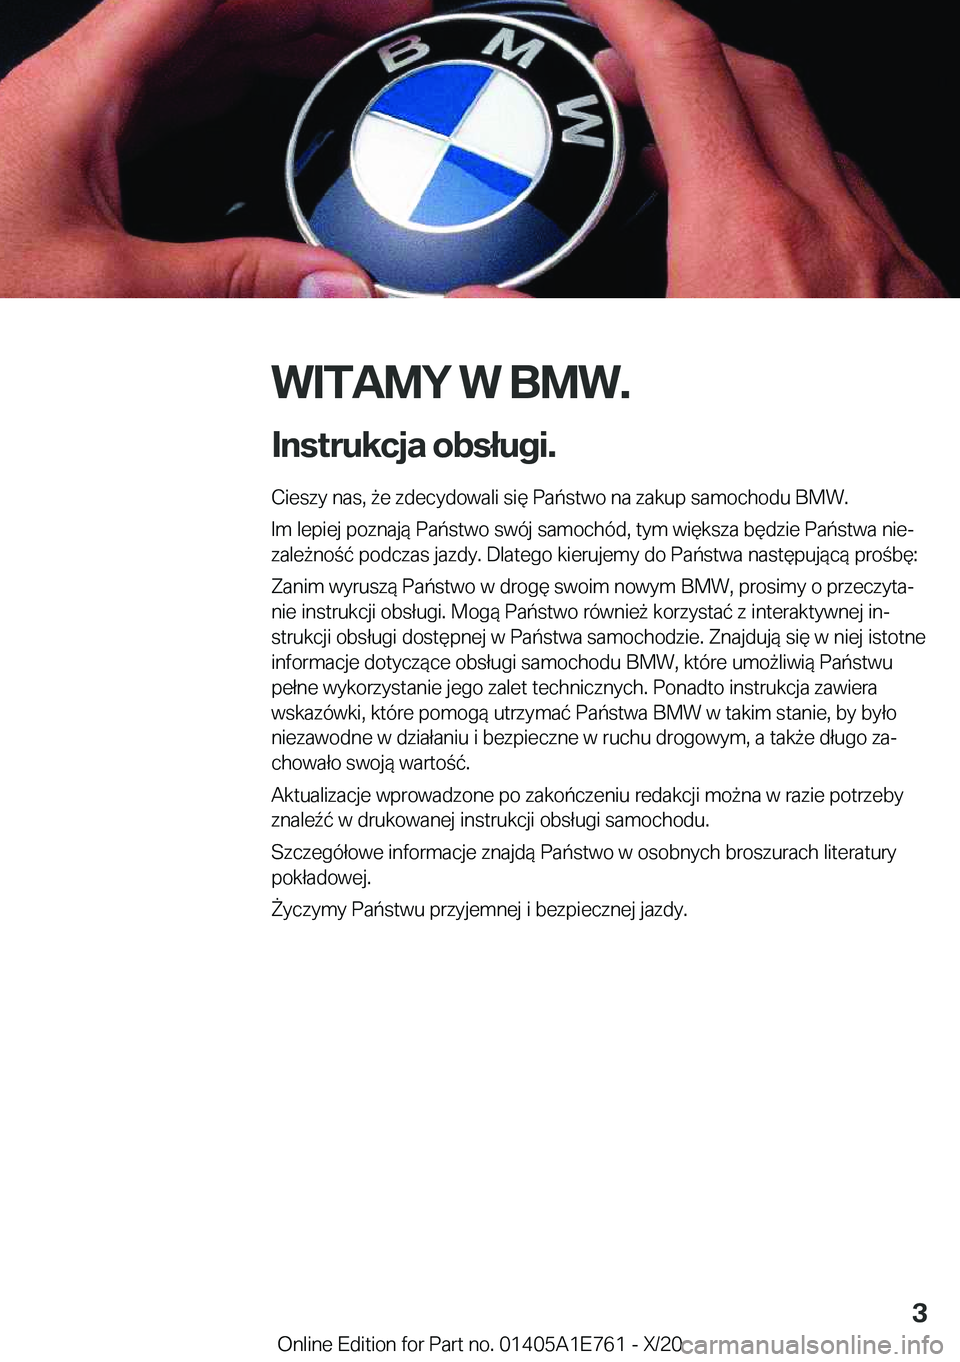 BMW X2 2021  Instrukcja obsługi (in Polish) �W�I�T�A�M�Y��W��B�M�W�.
�I�n�s�t�r�u�k�c�j�a��o�b�s�ł�u�g�i�. �C�i�e�s�z�y��n�a�s�,�9�e��z�d�e�c�y�d�o�w�a�l�i��s�i�